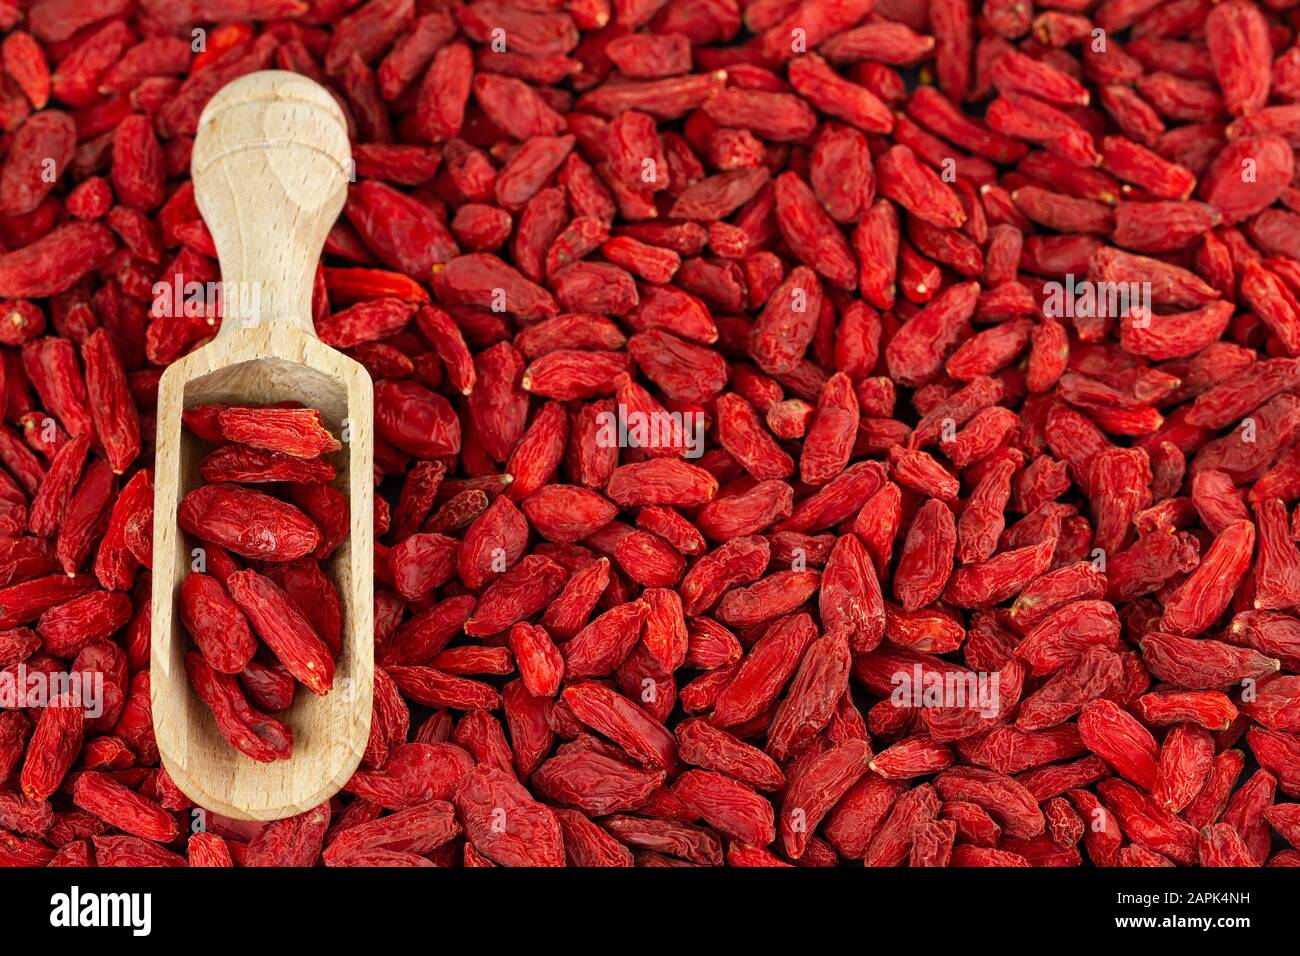 Red Berry Goji Berries Background Stock Photo